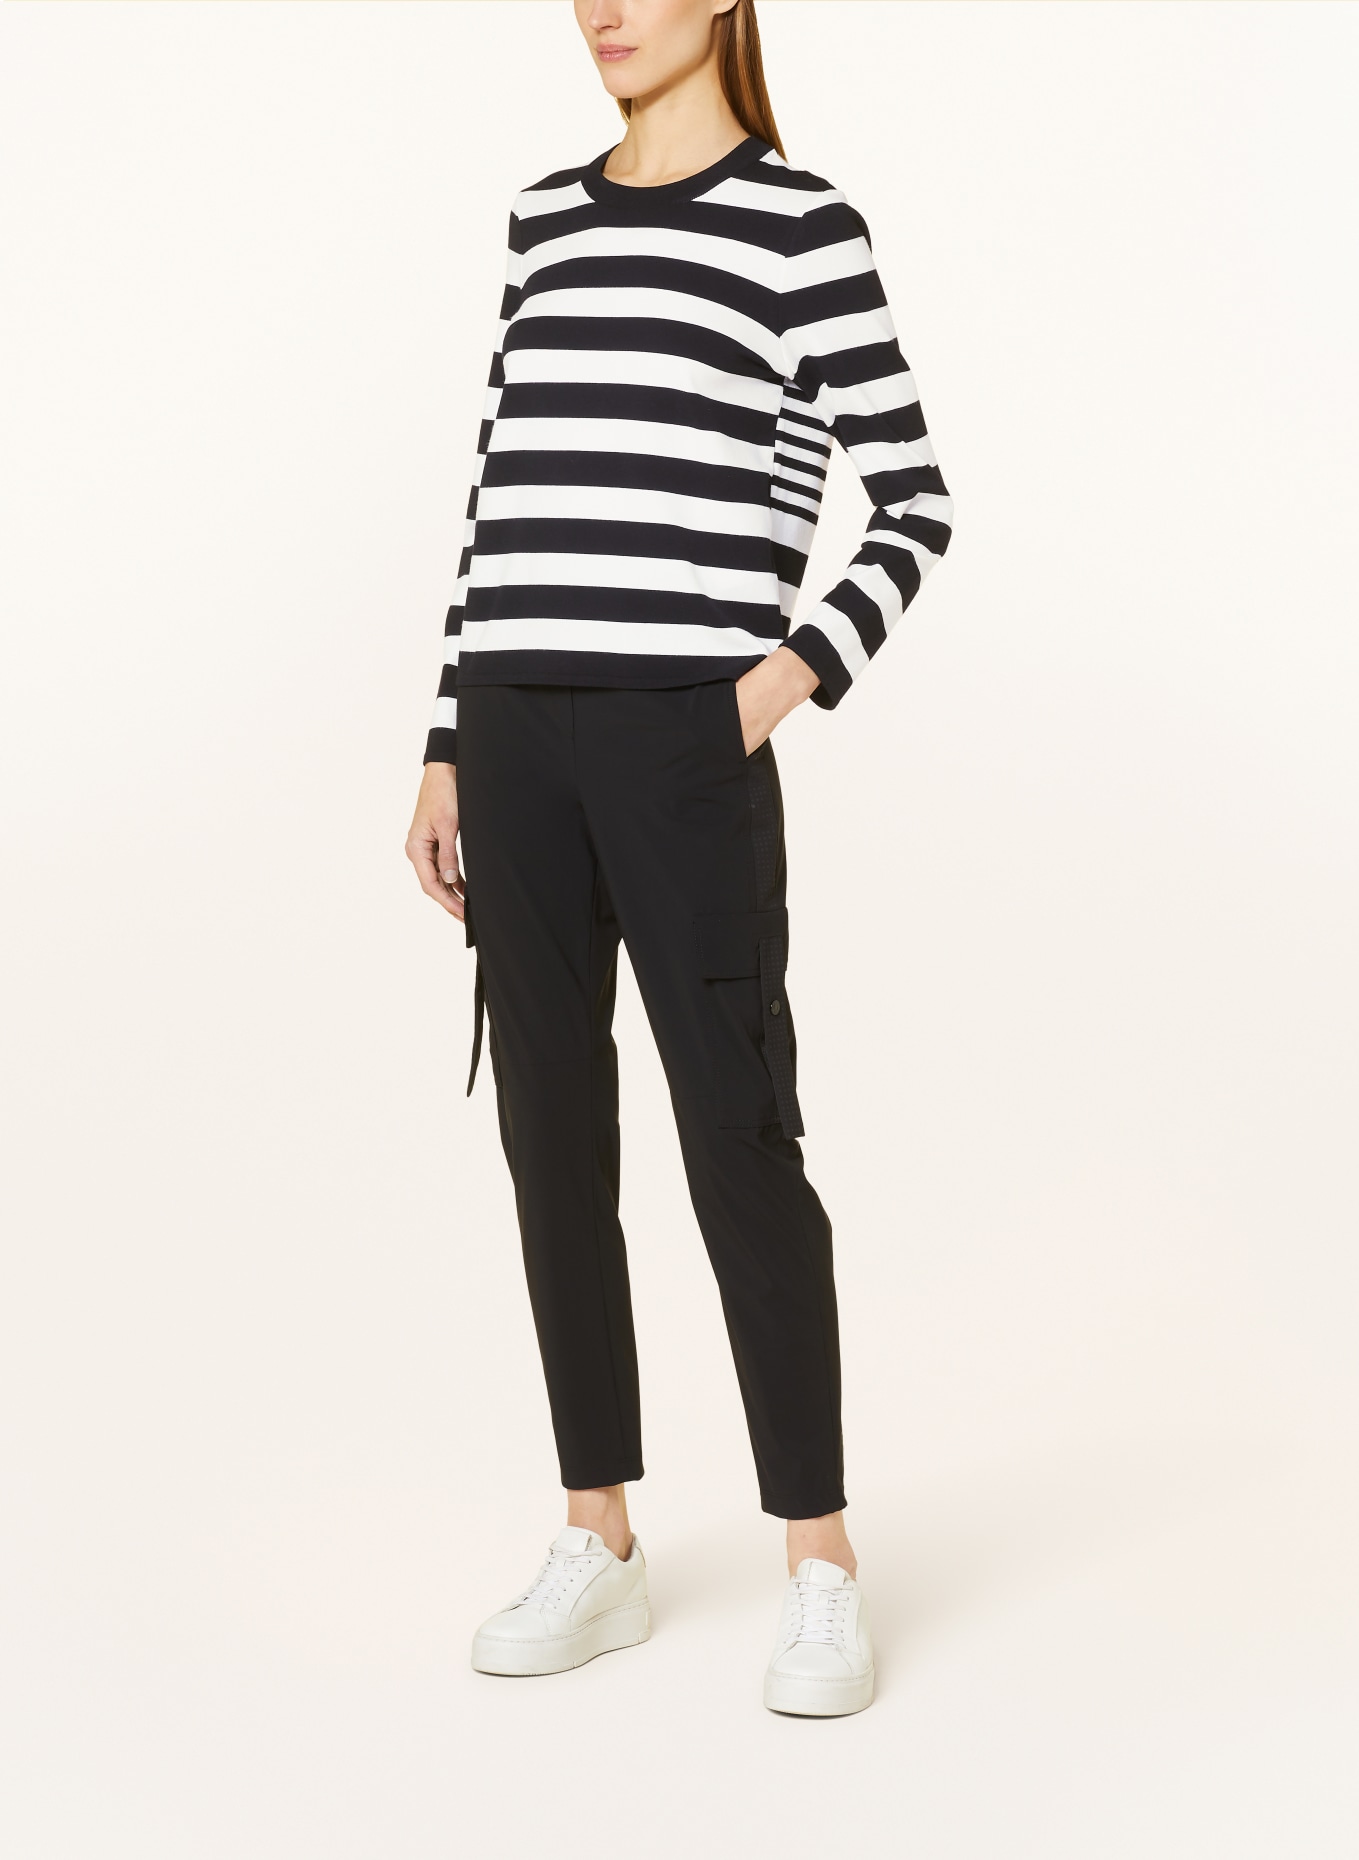 MARC CAIN Pullover, Farbe: 190 white and black (Bild 2)